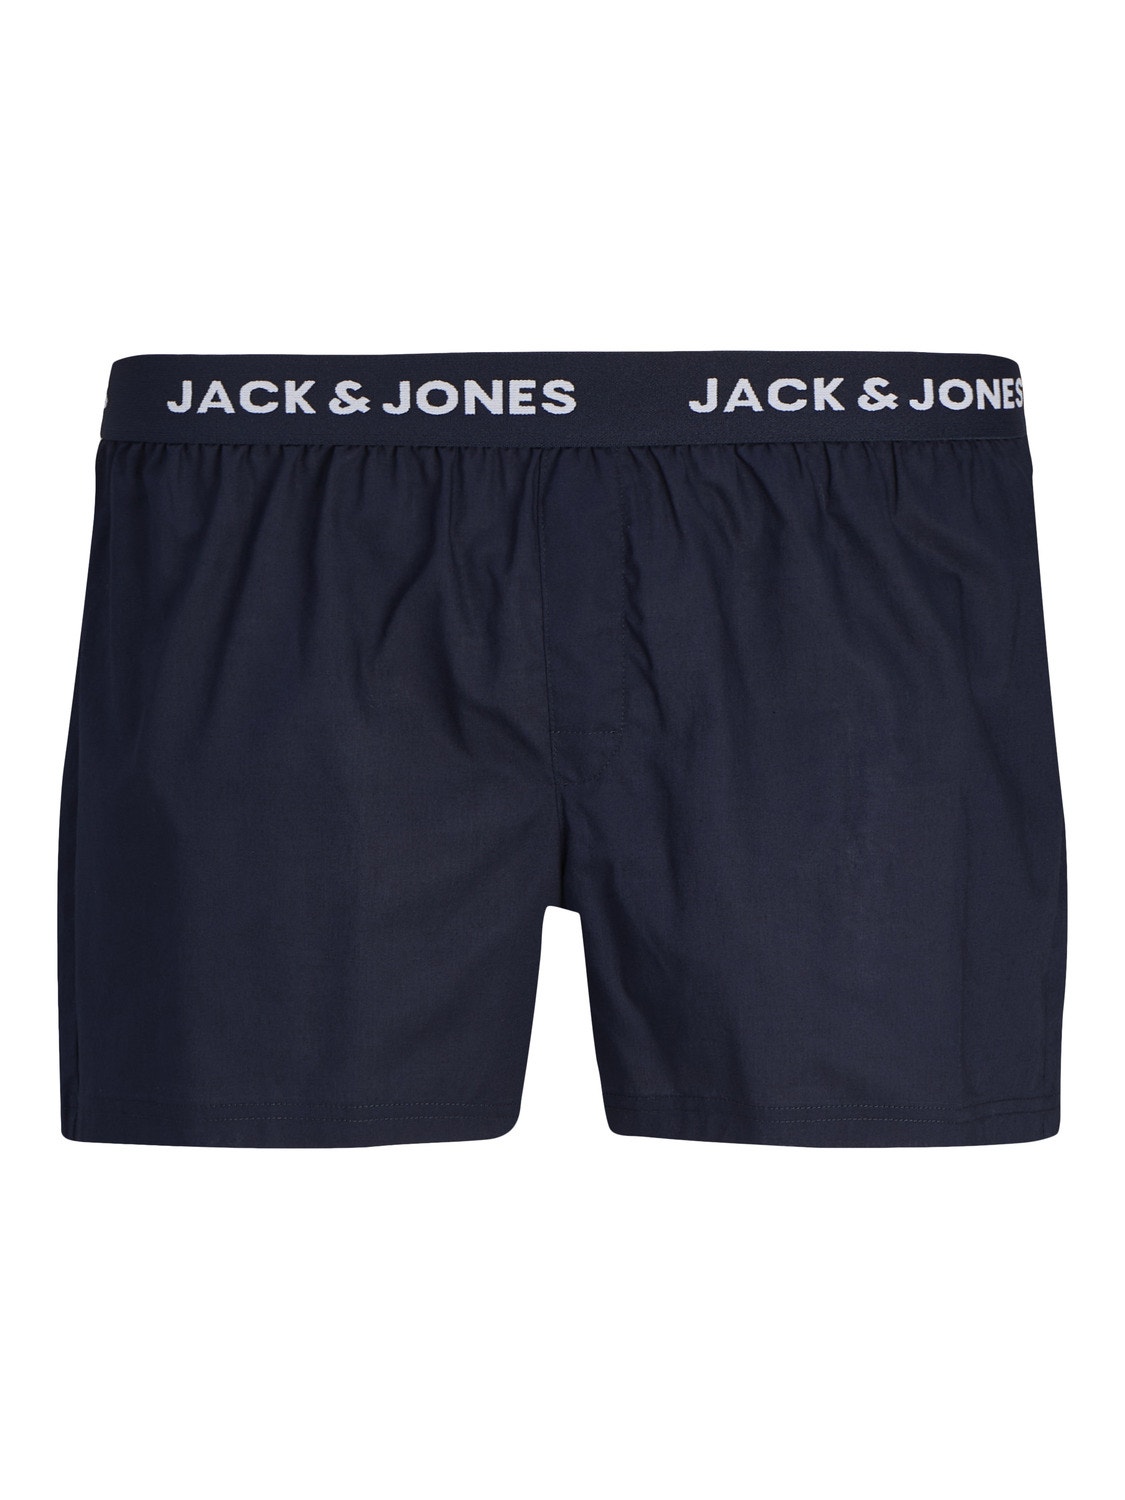 Jack & Jones 3-pakuotės Bokseriukai -Navy Blazer - 12253689